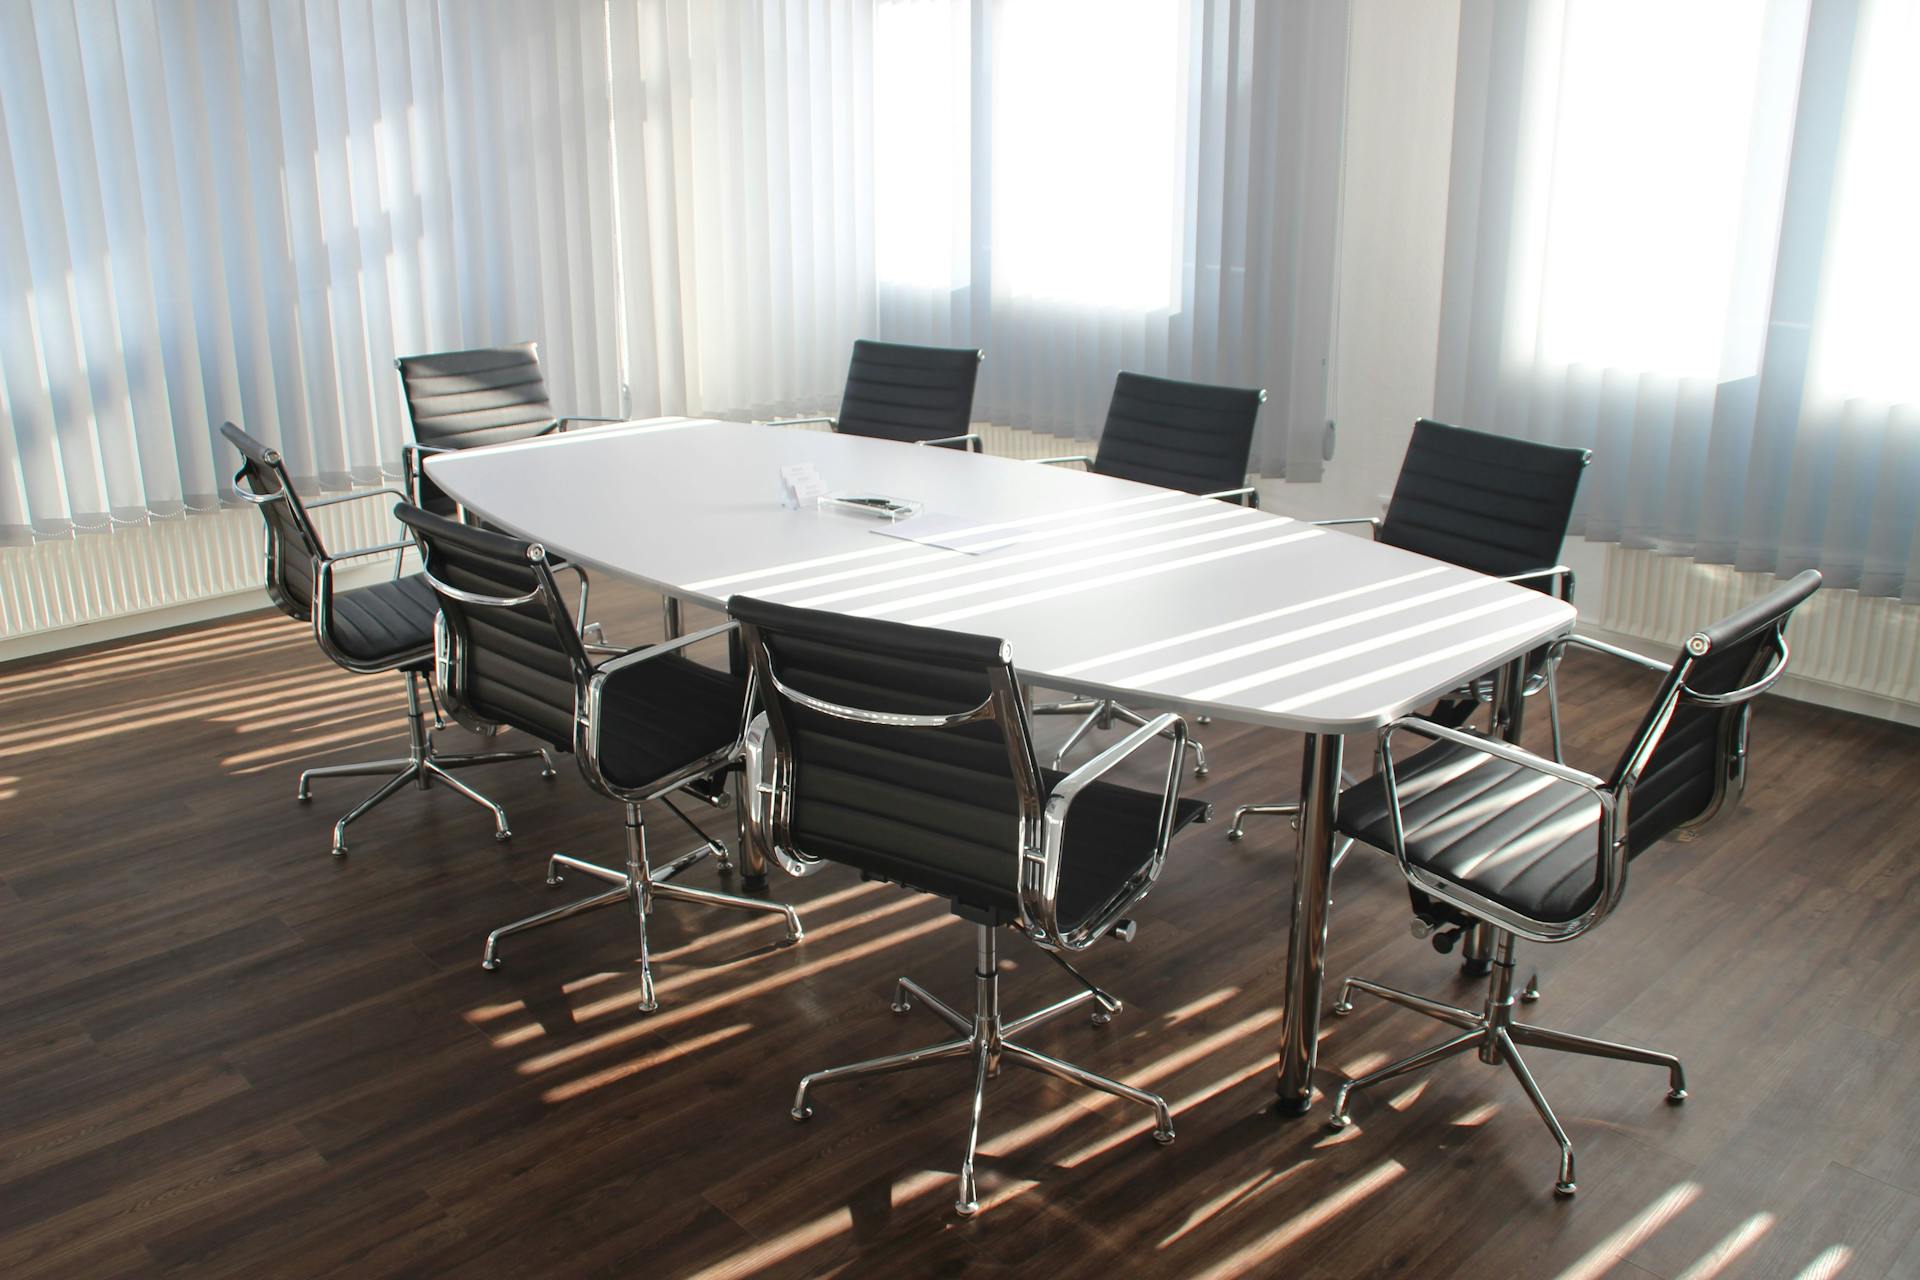 Une salle de réunion dans un bureau | Source : Pexels